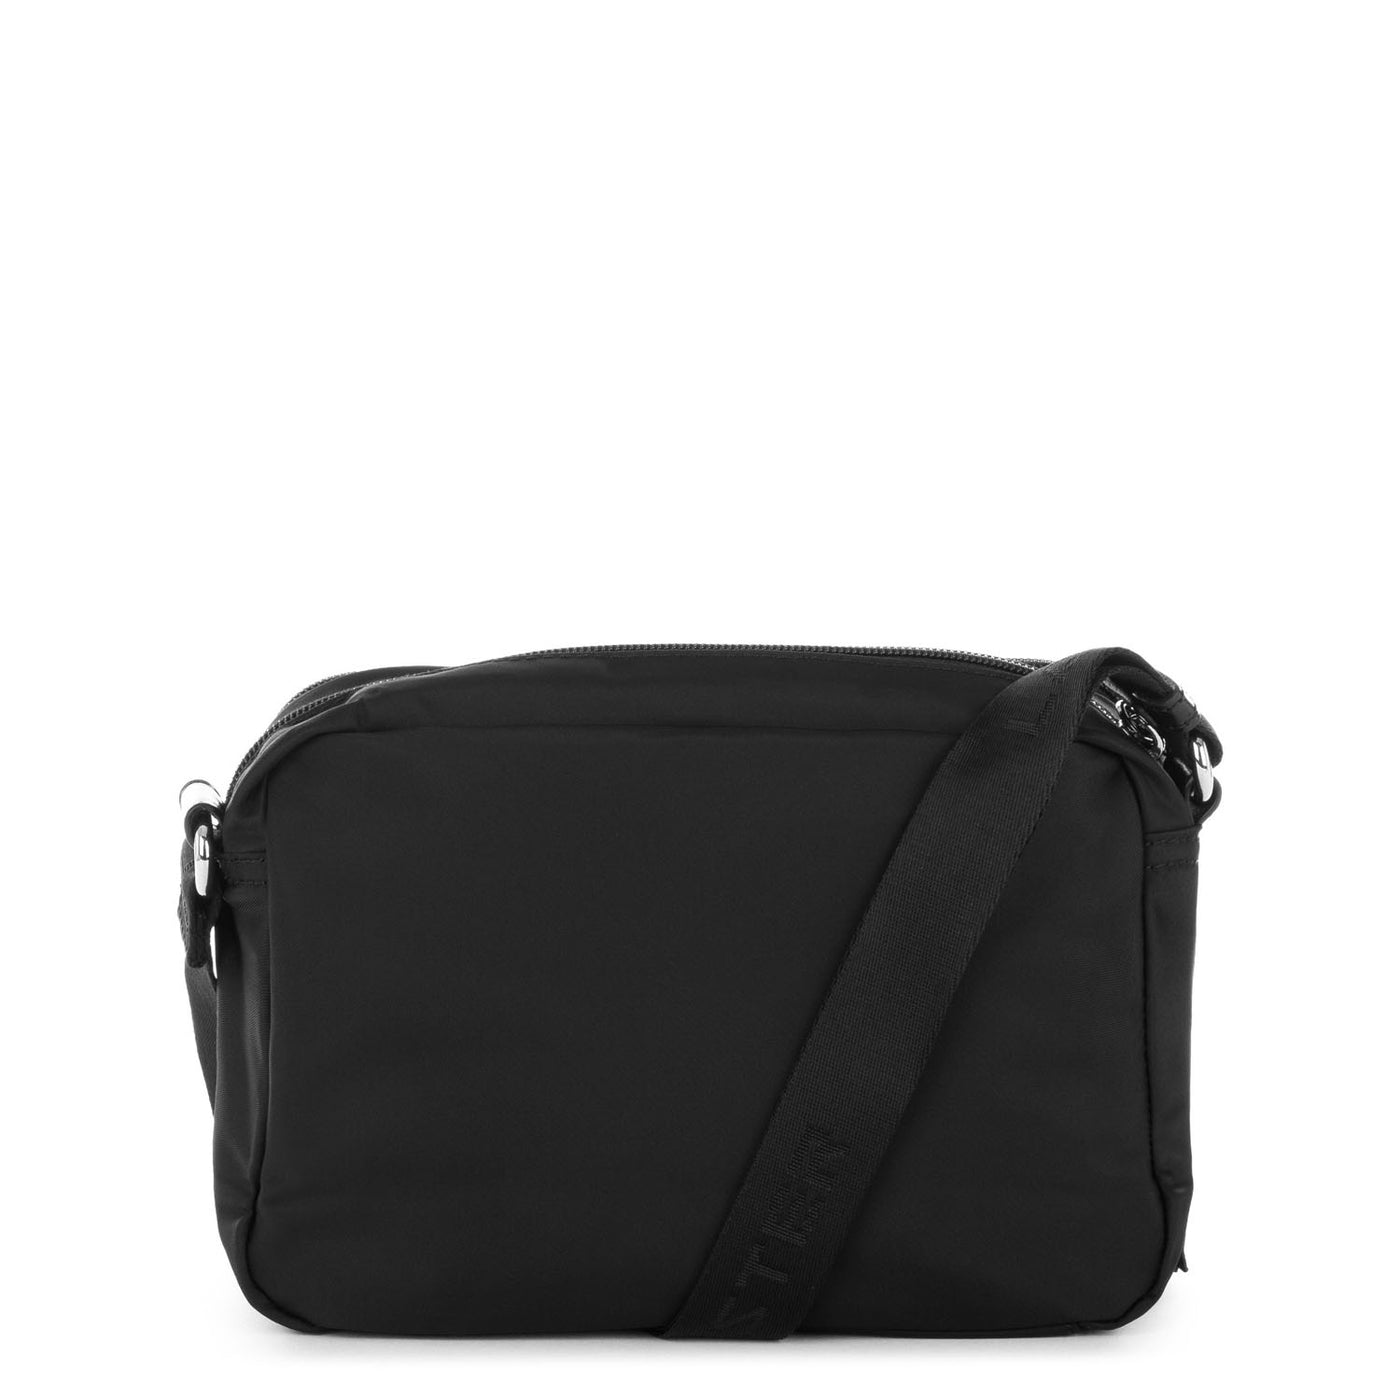 sac trotteur - basic pompon #couleur_noir